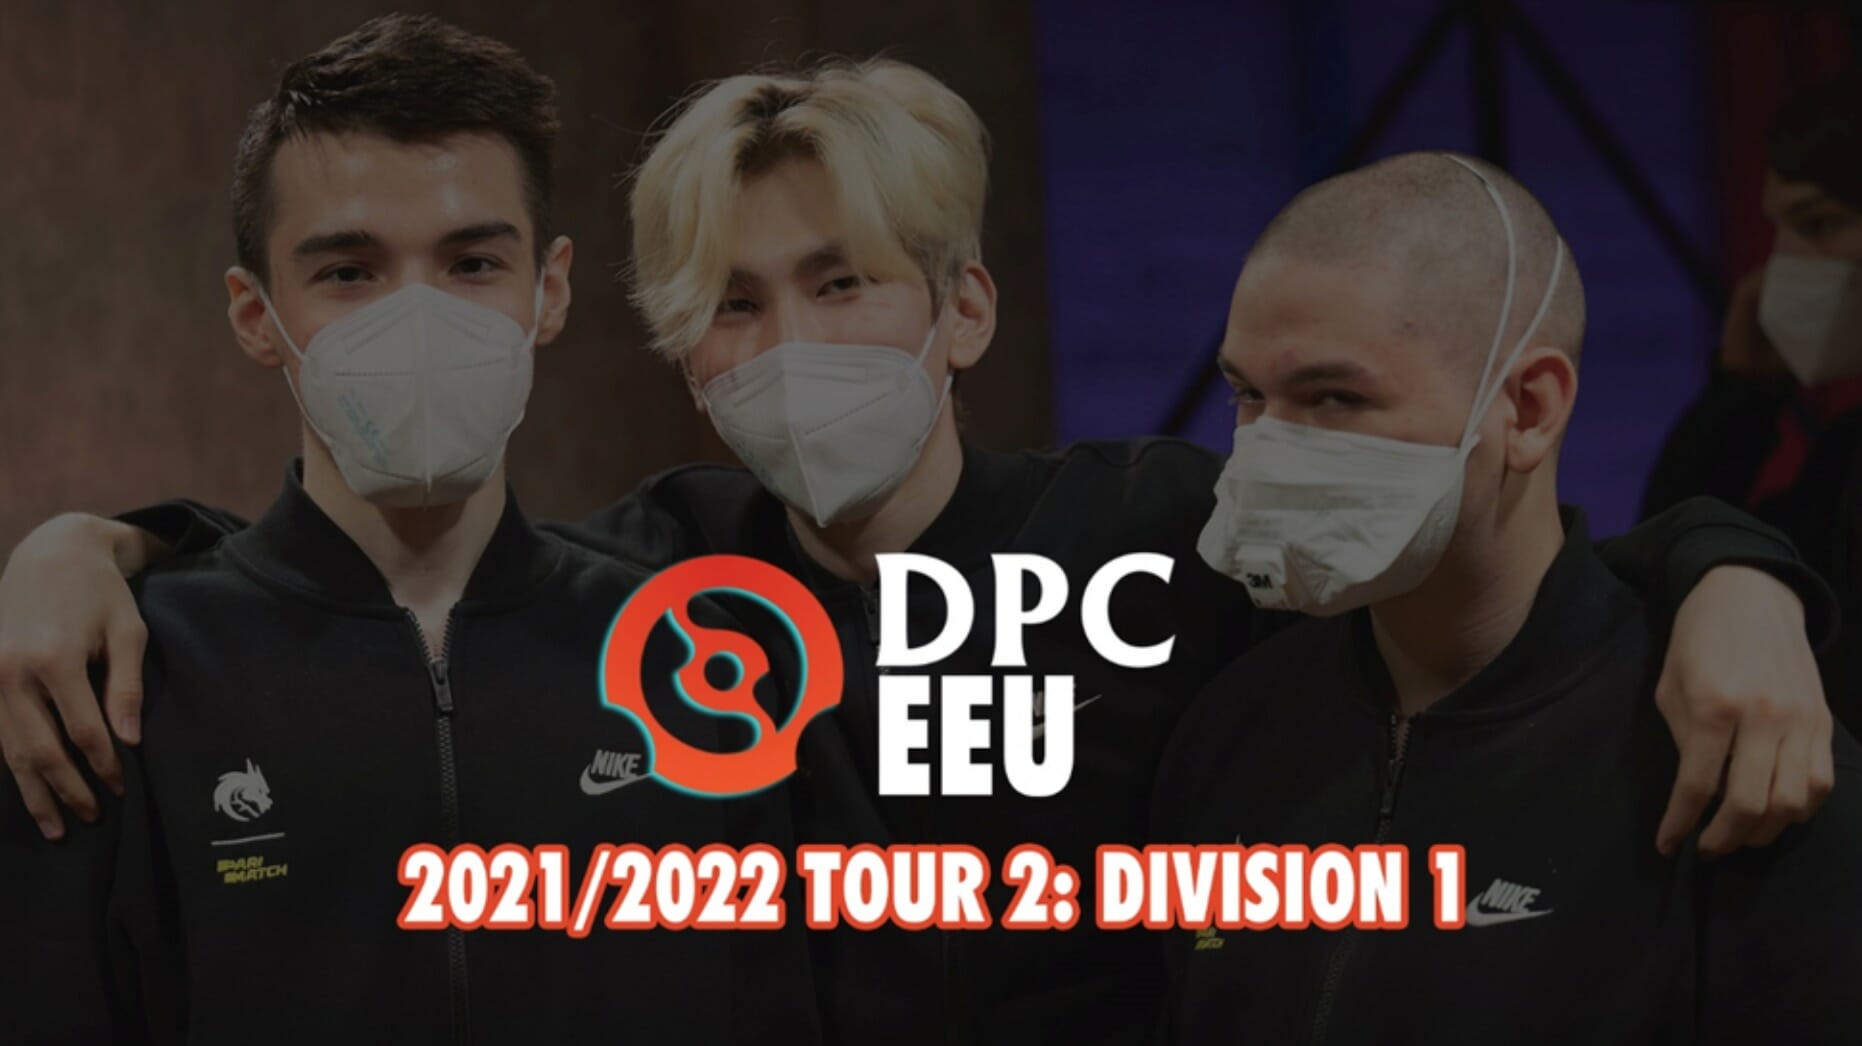 Giải đấu Dota Pro DPC EEU 2021/2022 Tour 2